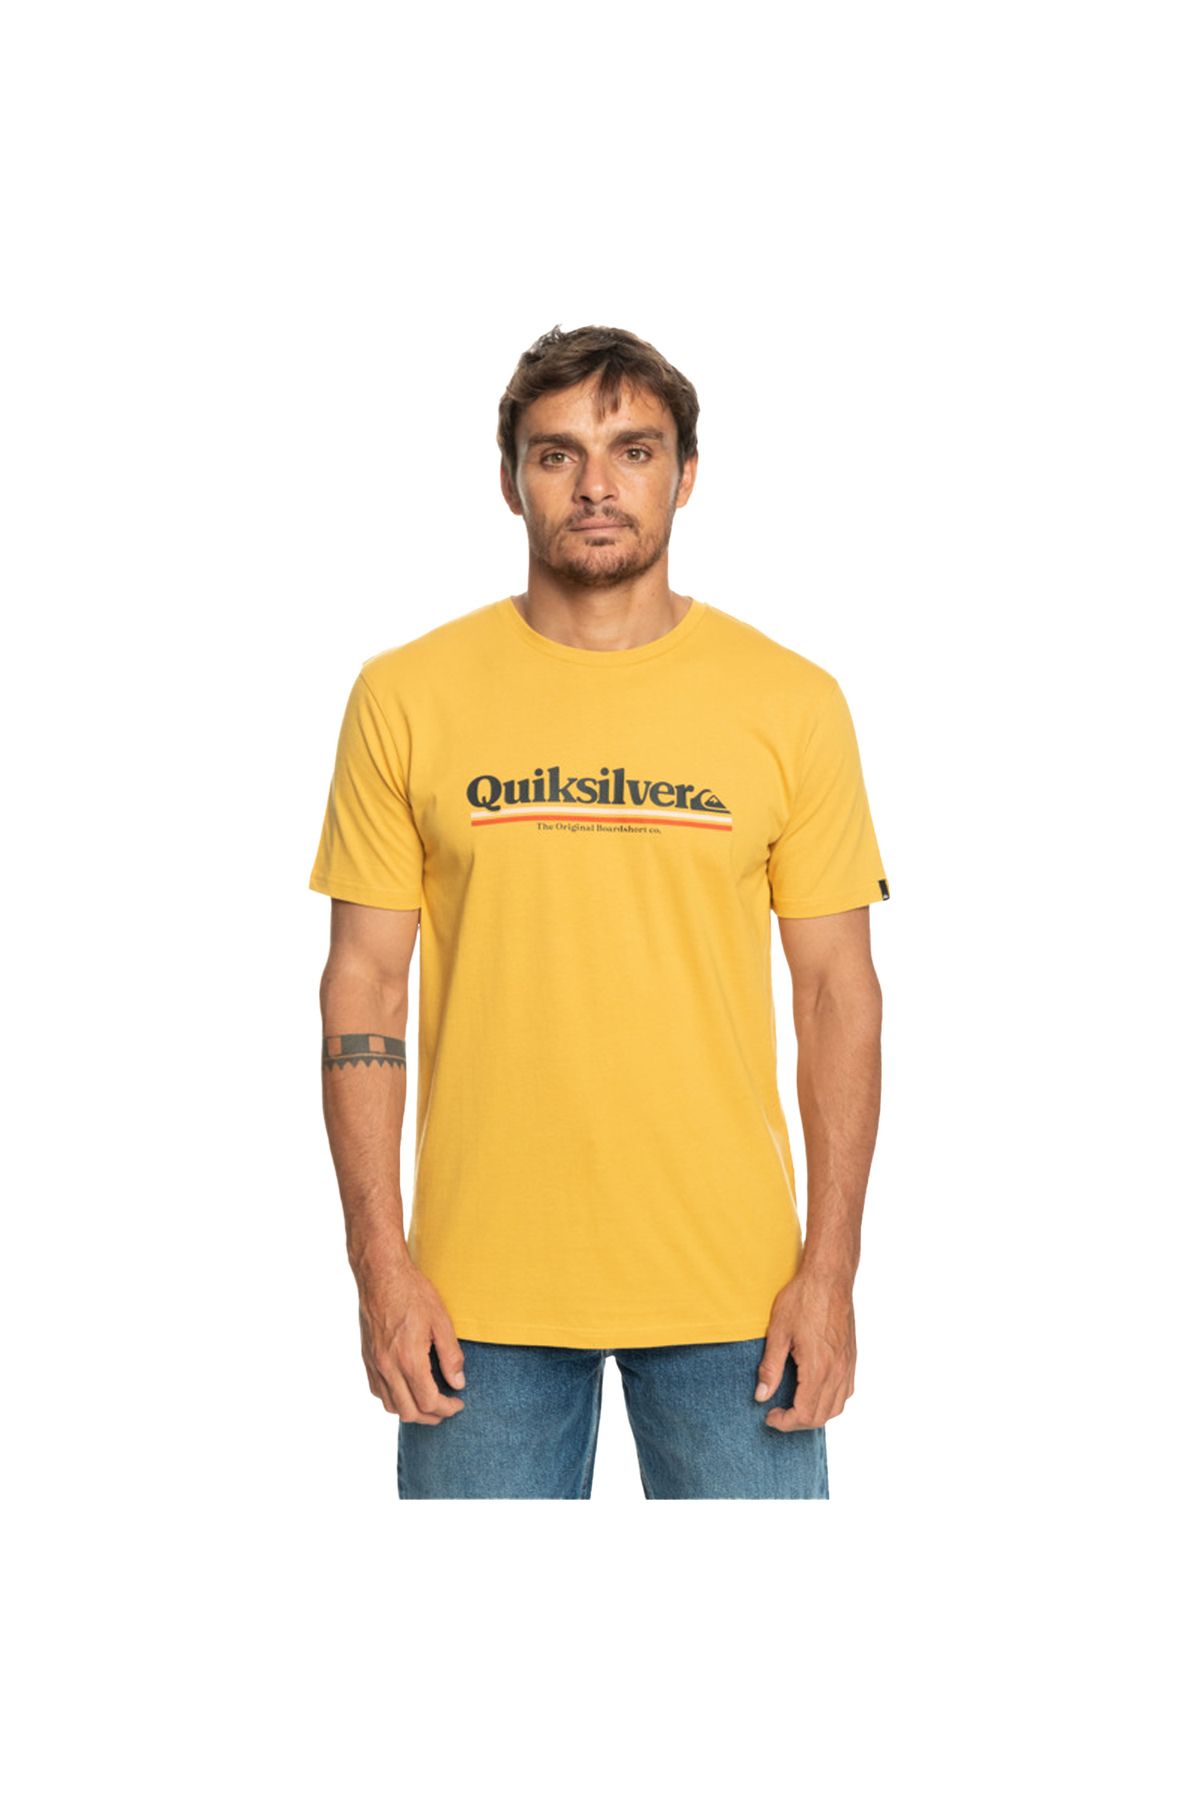 Quiksilver The Original Erkek Tişört